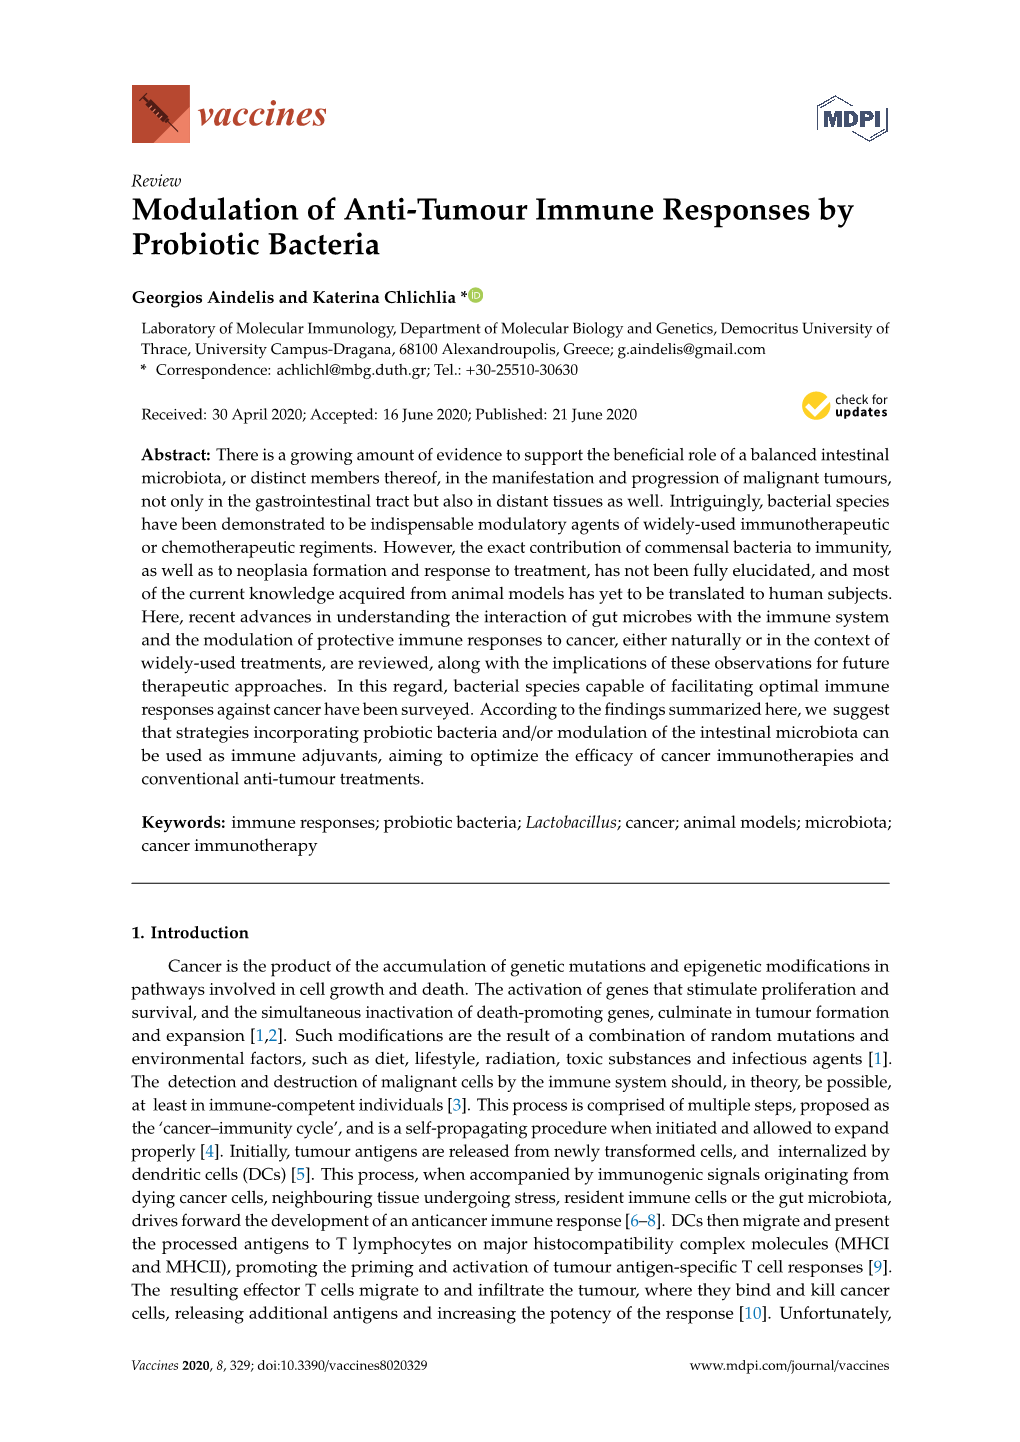 Modulation of Anti-Tumour Immune Responses by Probiotic Bacteria